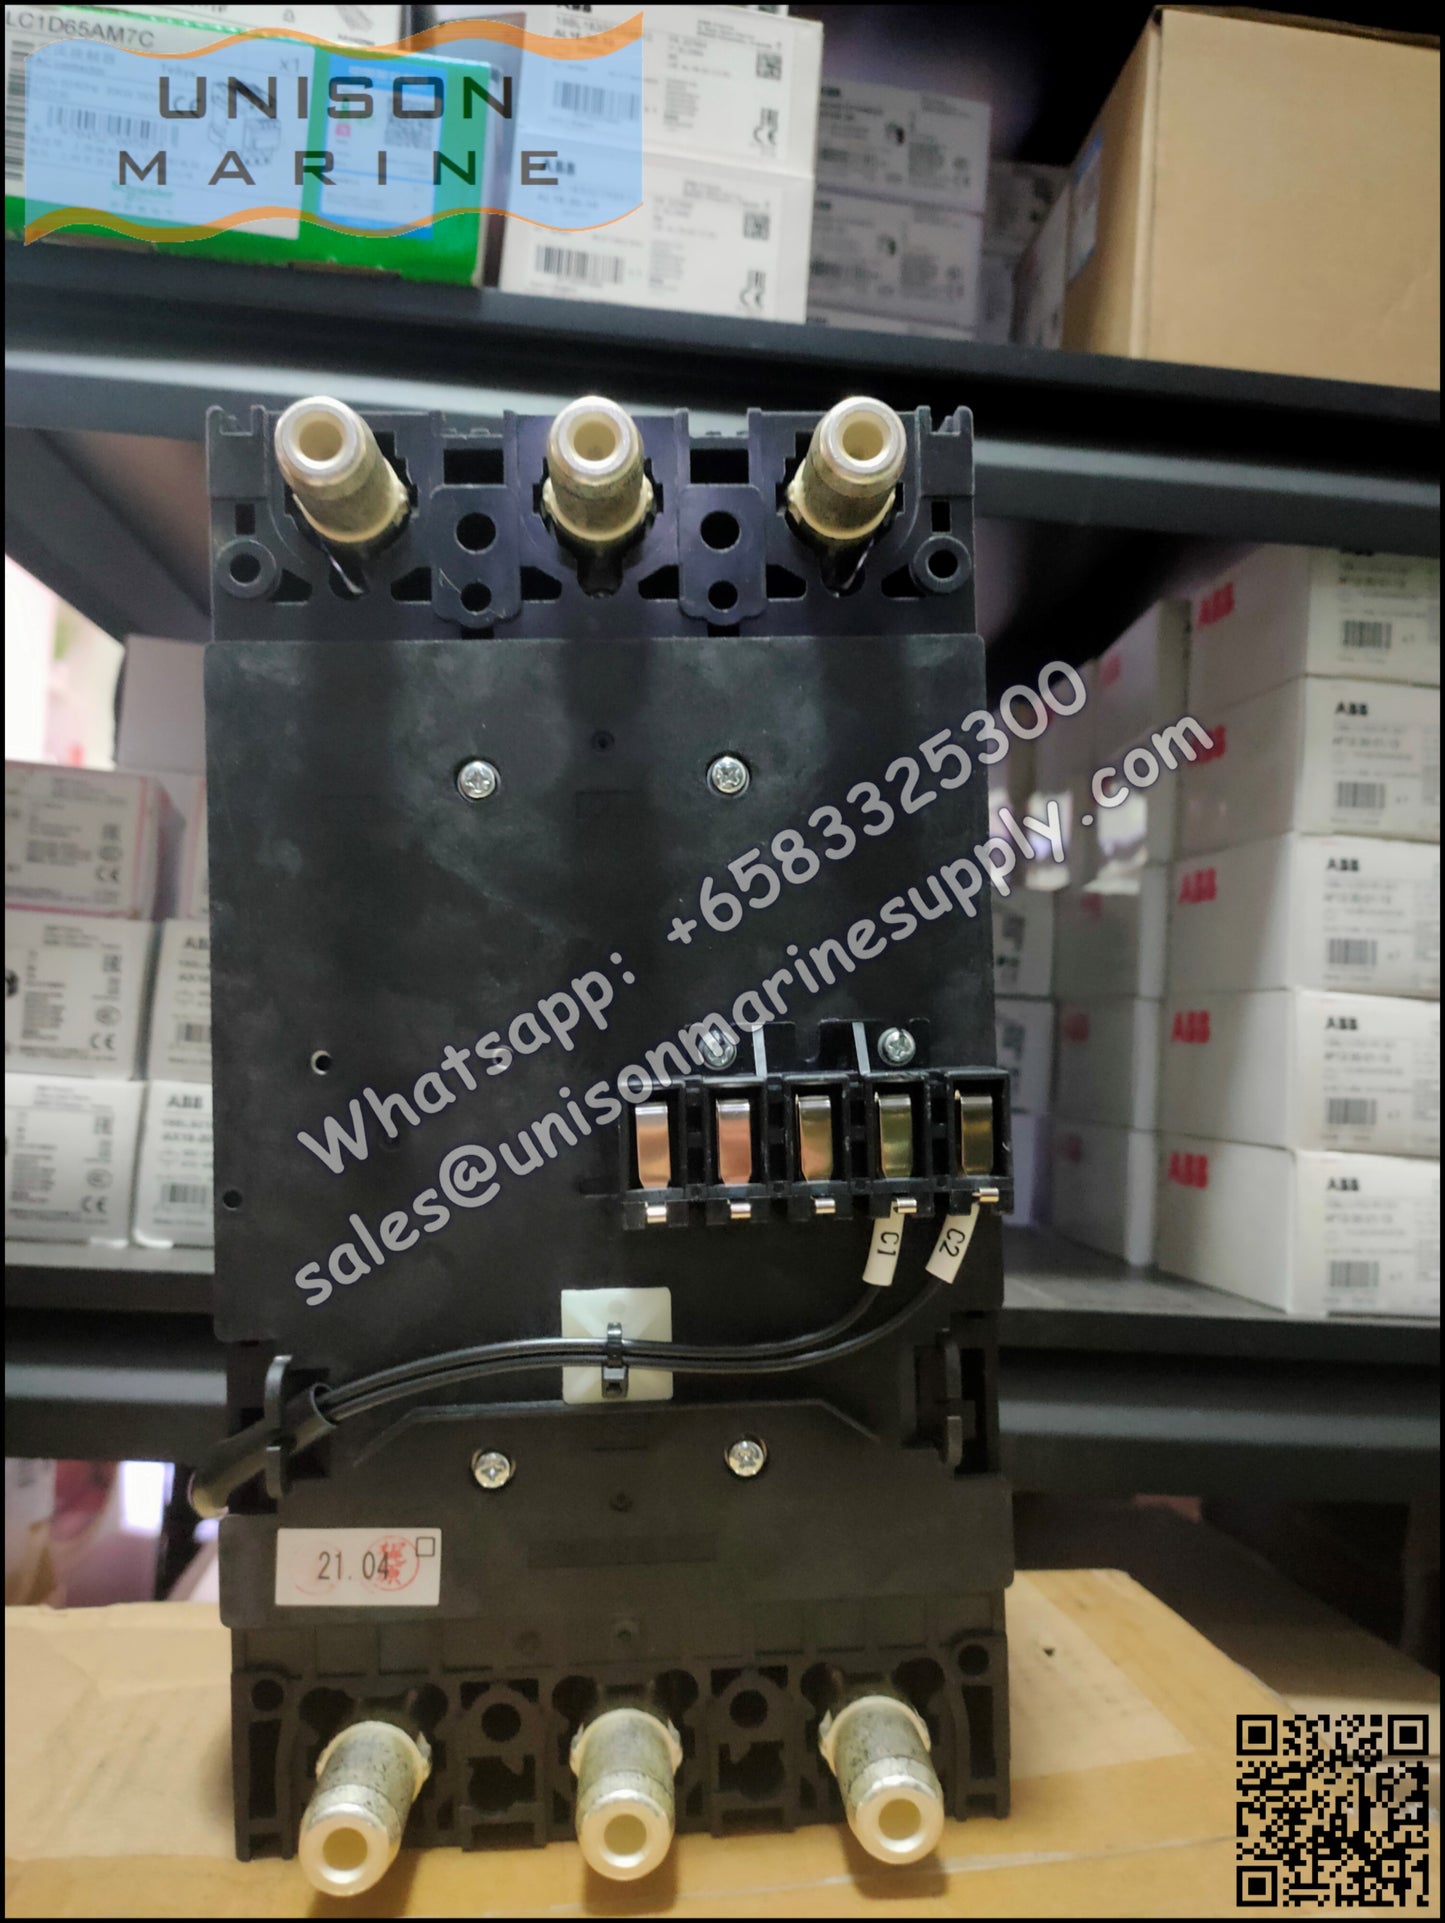 TRASAKI Marine Circuit Breaker (MCCB): S400-GF 3P 350A Fixed / Plug-in Type